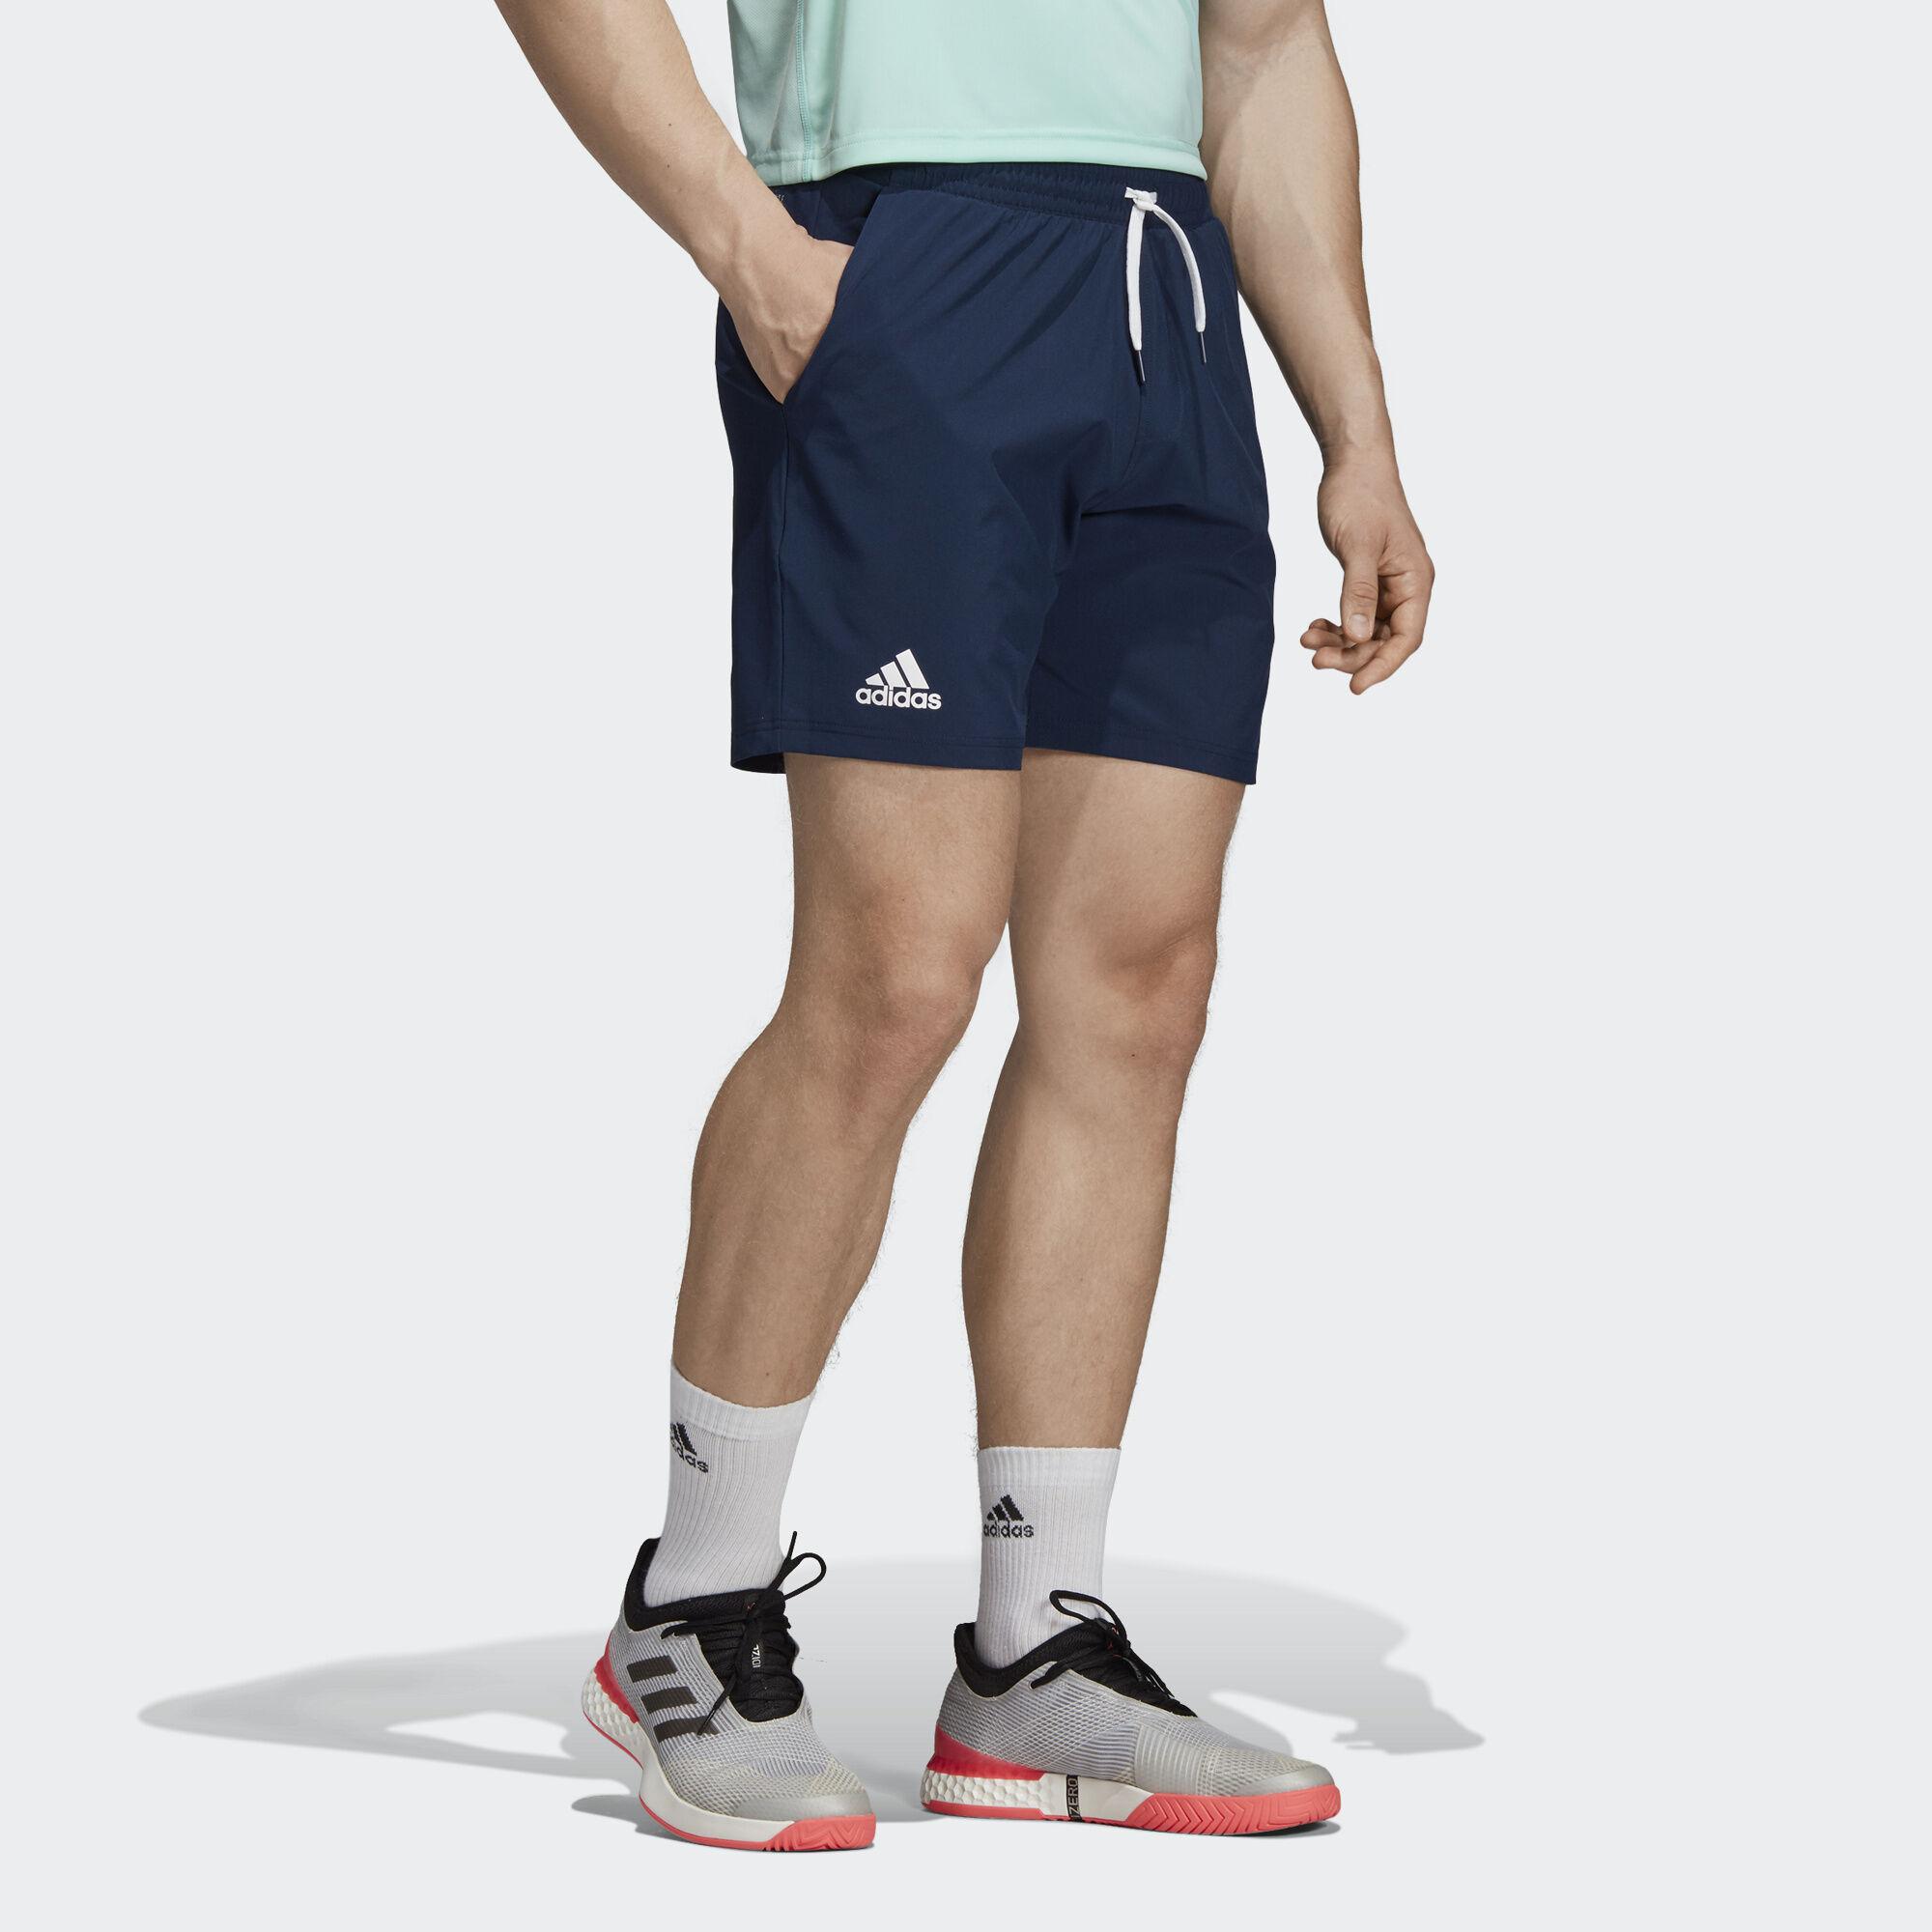 adidas running shorts 7 inch